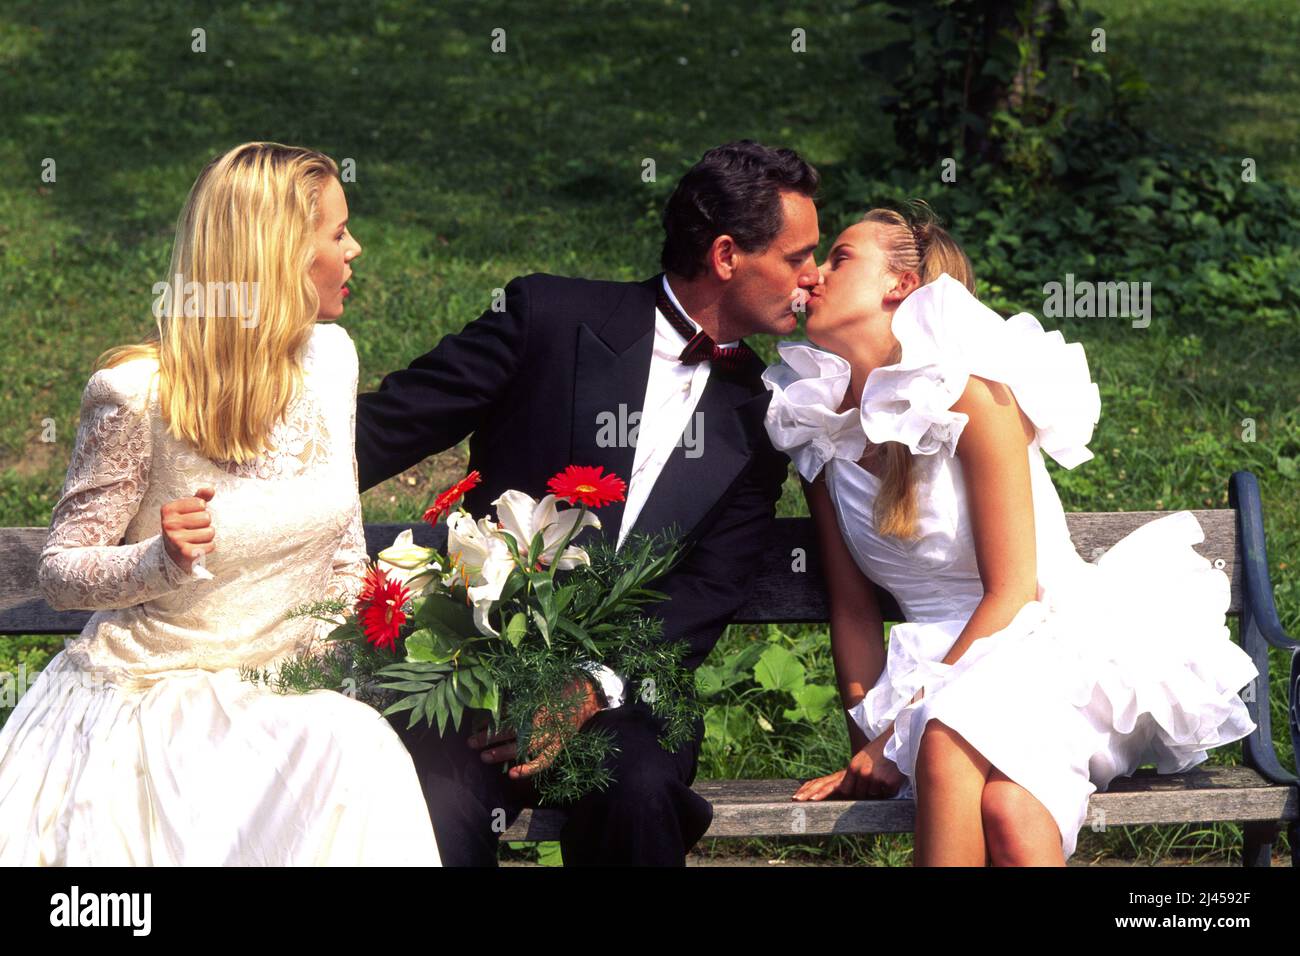 Frisch getrauter Ehemann liebt zwei Frauen, küsst seine Braut auf der Parkbank, Nebenbuhlerin schaut zu, Playboy, Vielehe, Gigola, Foto Stock